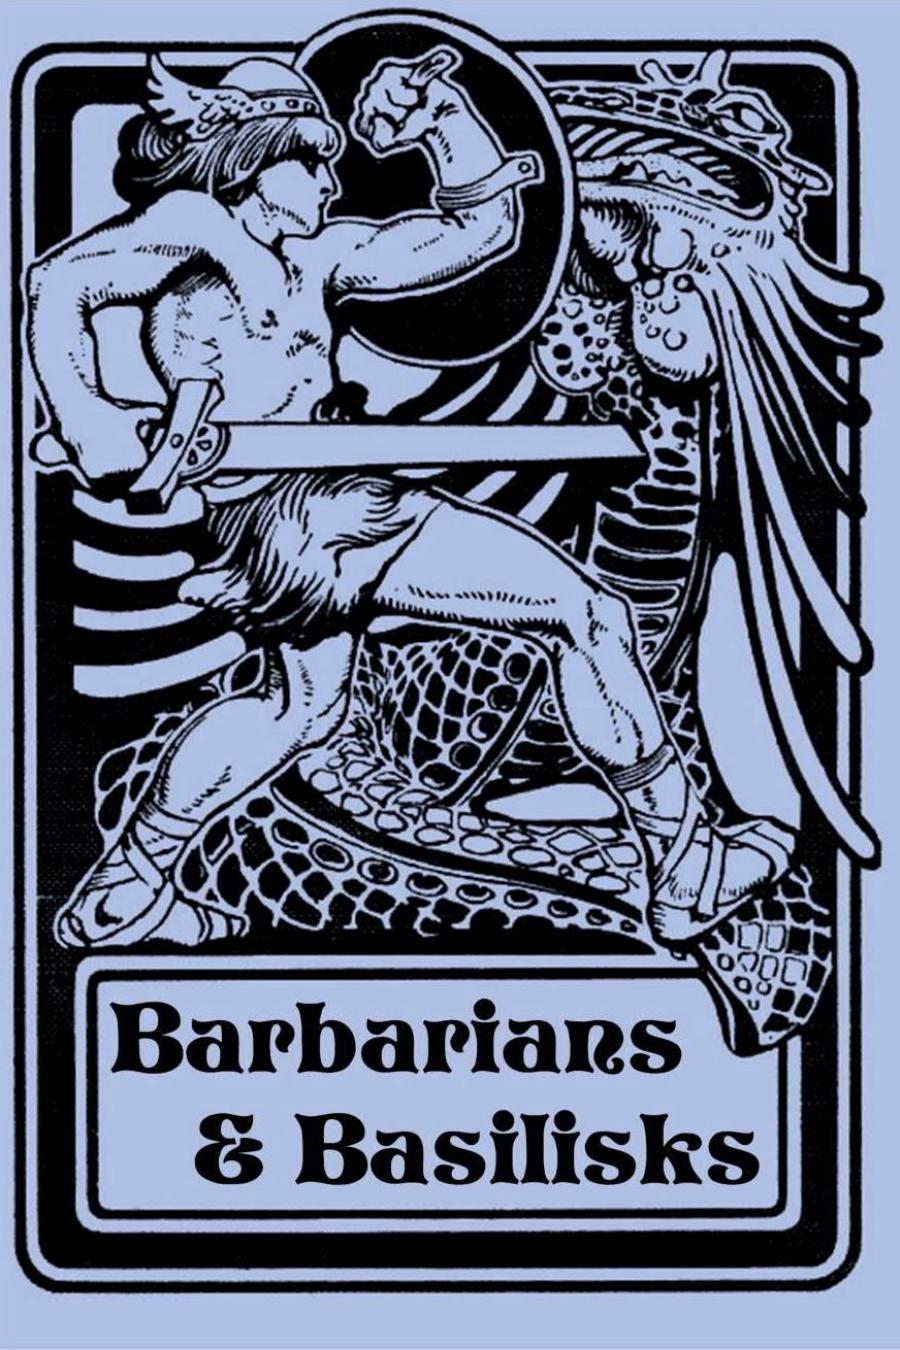 Barbarians & Basilisks